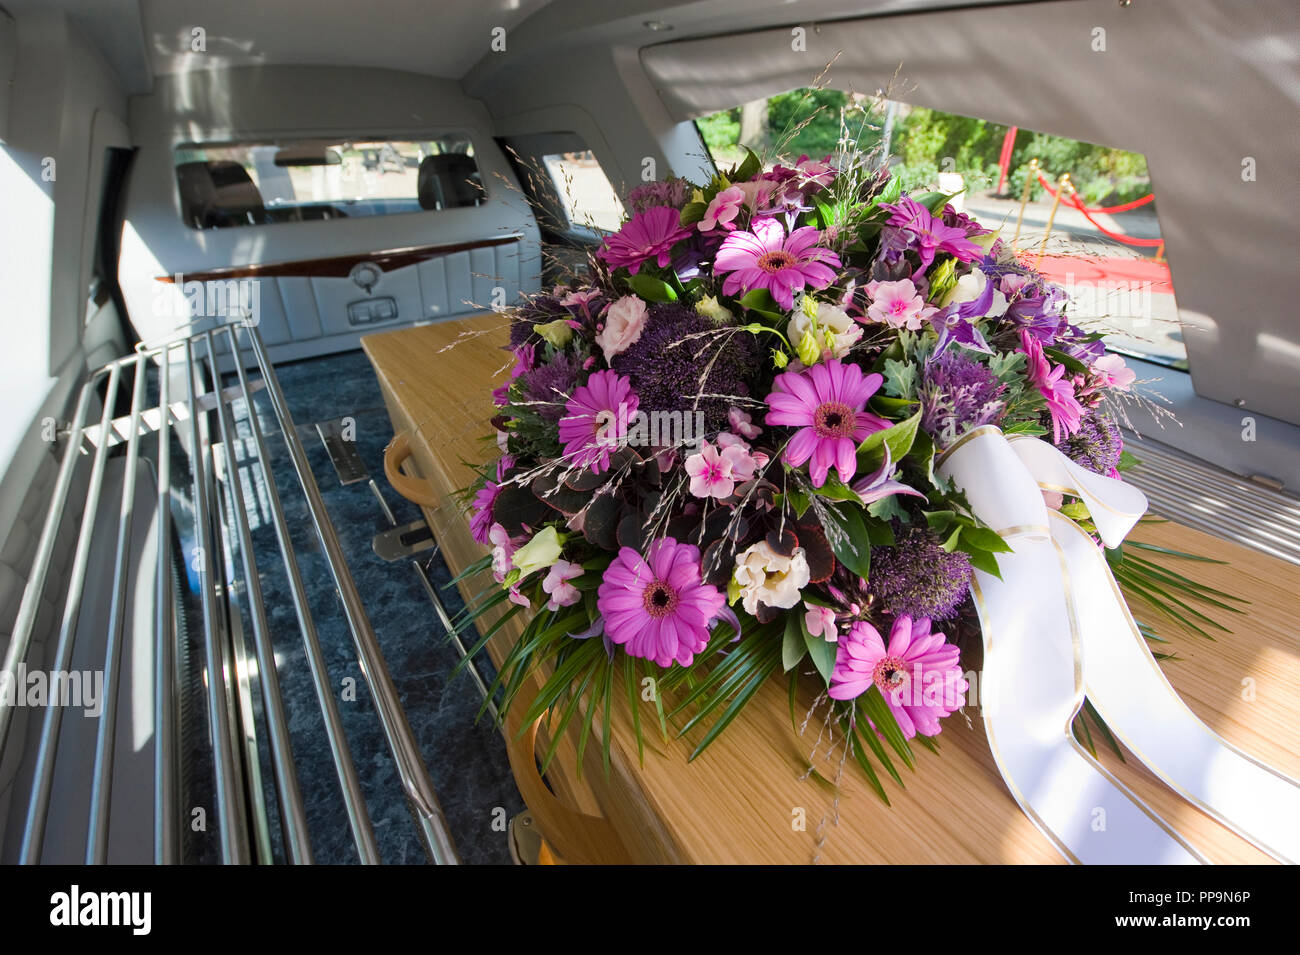 Un cercueil avec un arrangement floral dans une voiture Banque D'Images